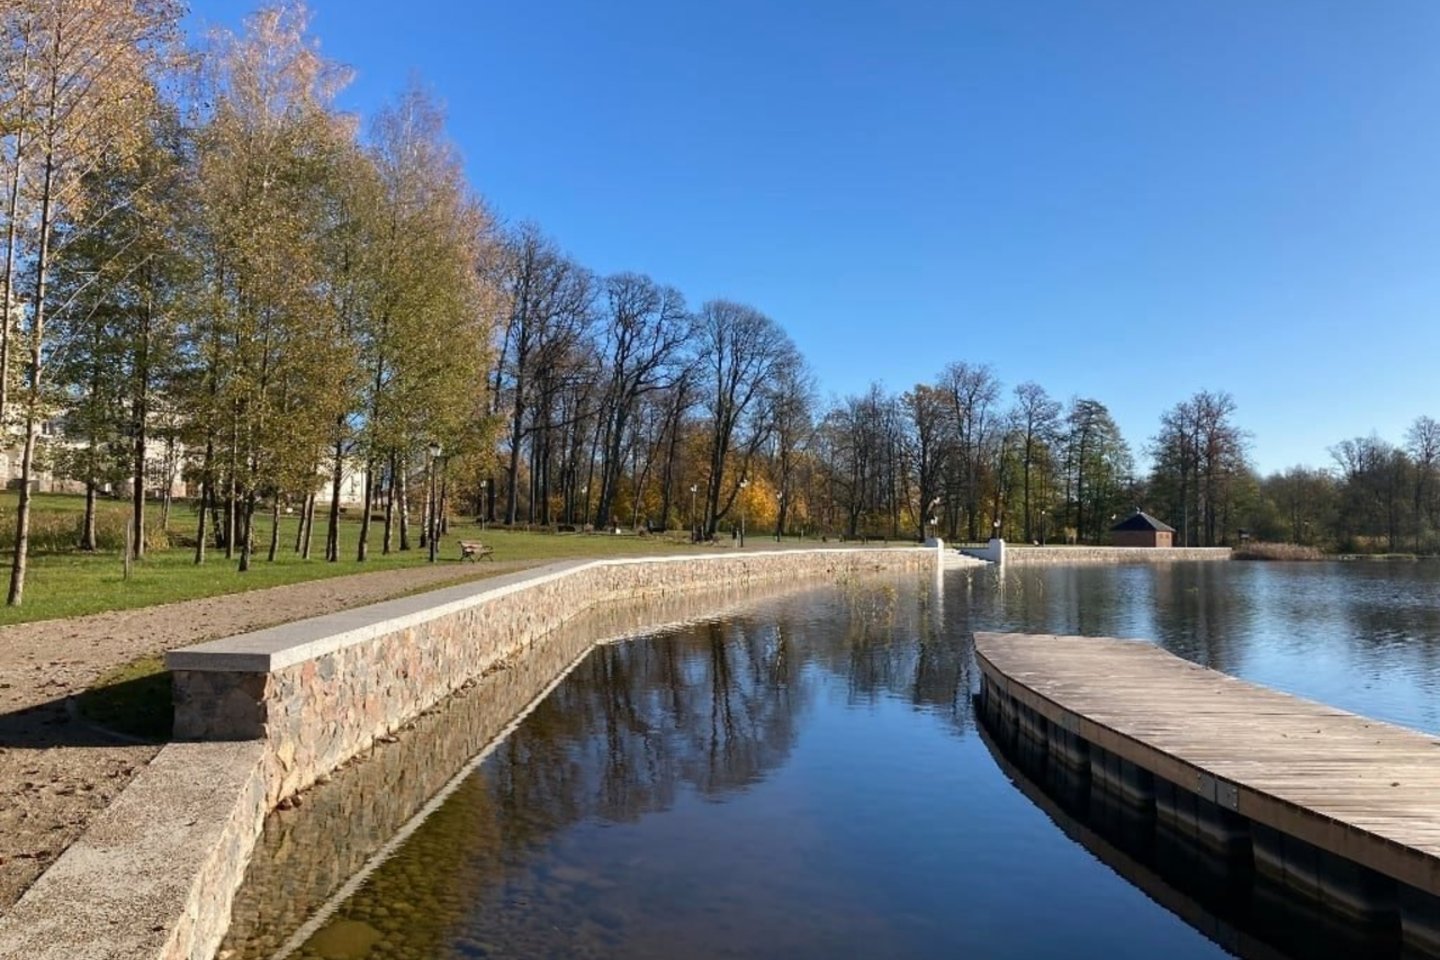 Biržų mieste esantis Astravo dvaras su parku – viena raiškiausių XIX a. romantinio klasicizmo stiliaus sodybų Lietuvoje.<br> KPD nuotr.